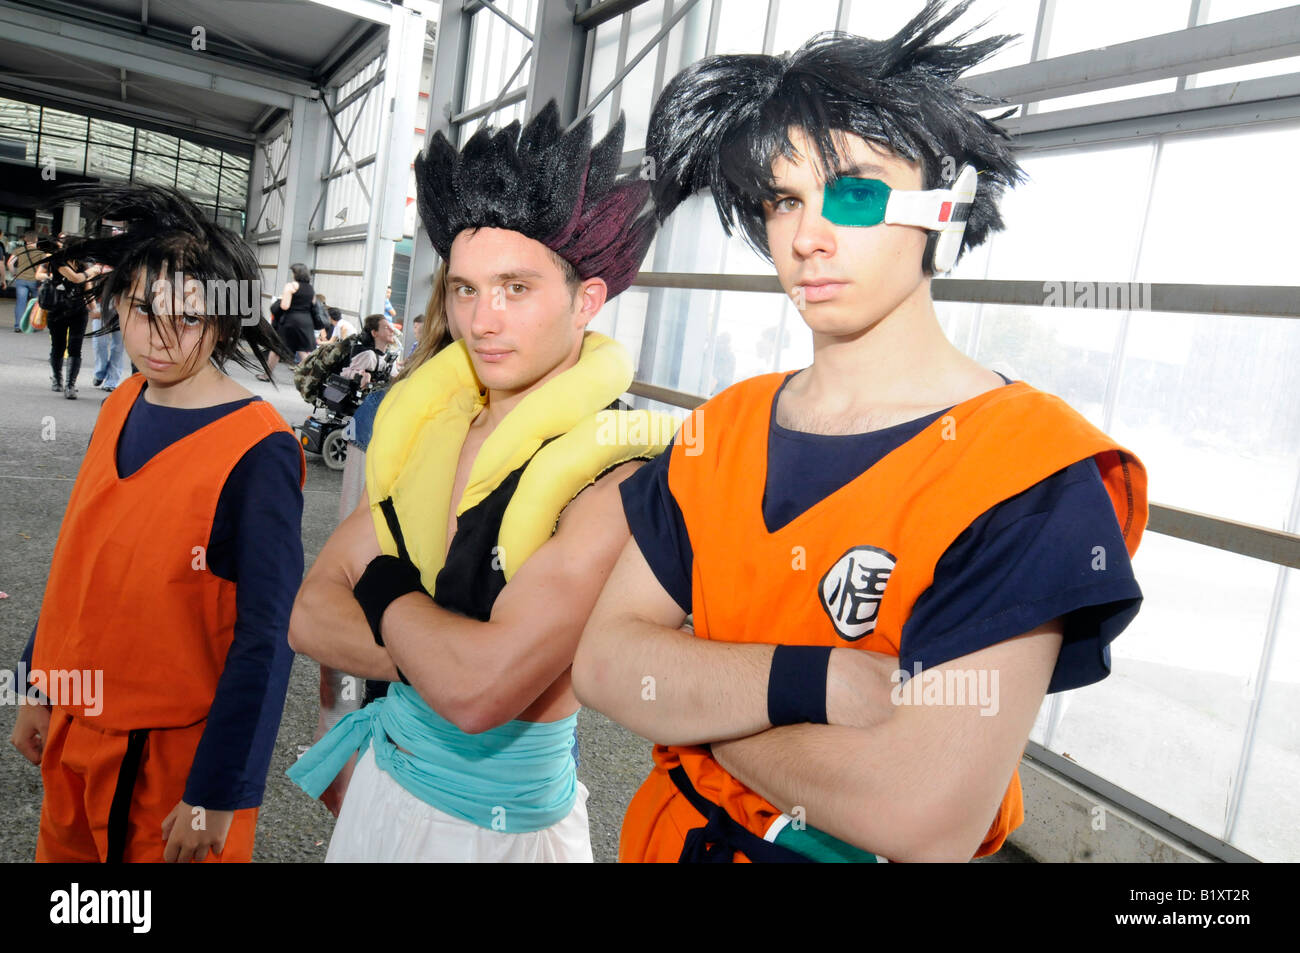 Les fans de manga japonais 'personnage' s'habiller comme leur héros pendant un événement de cosplay à Japan Expo foire-exposition. Banque D'Images